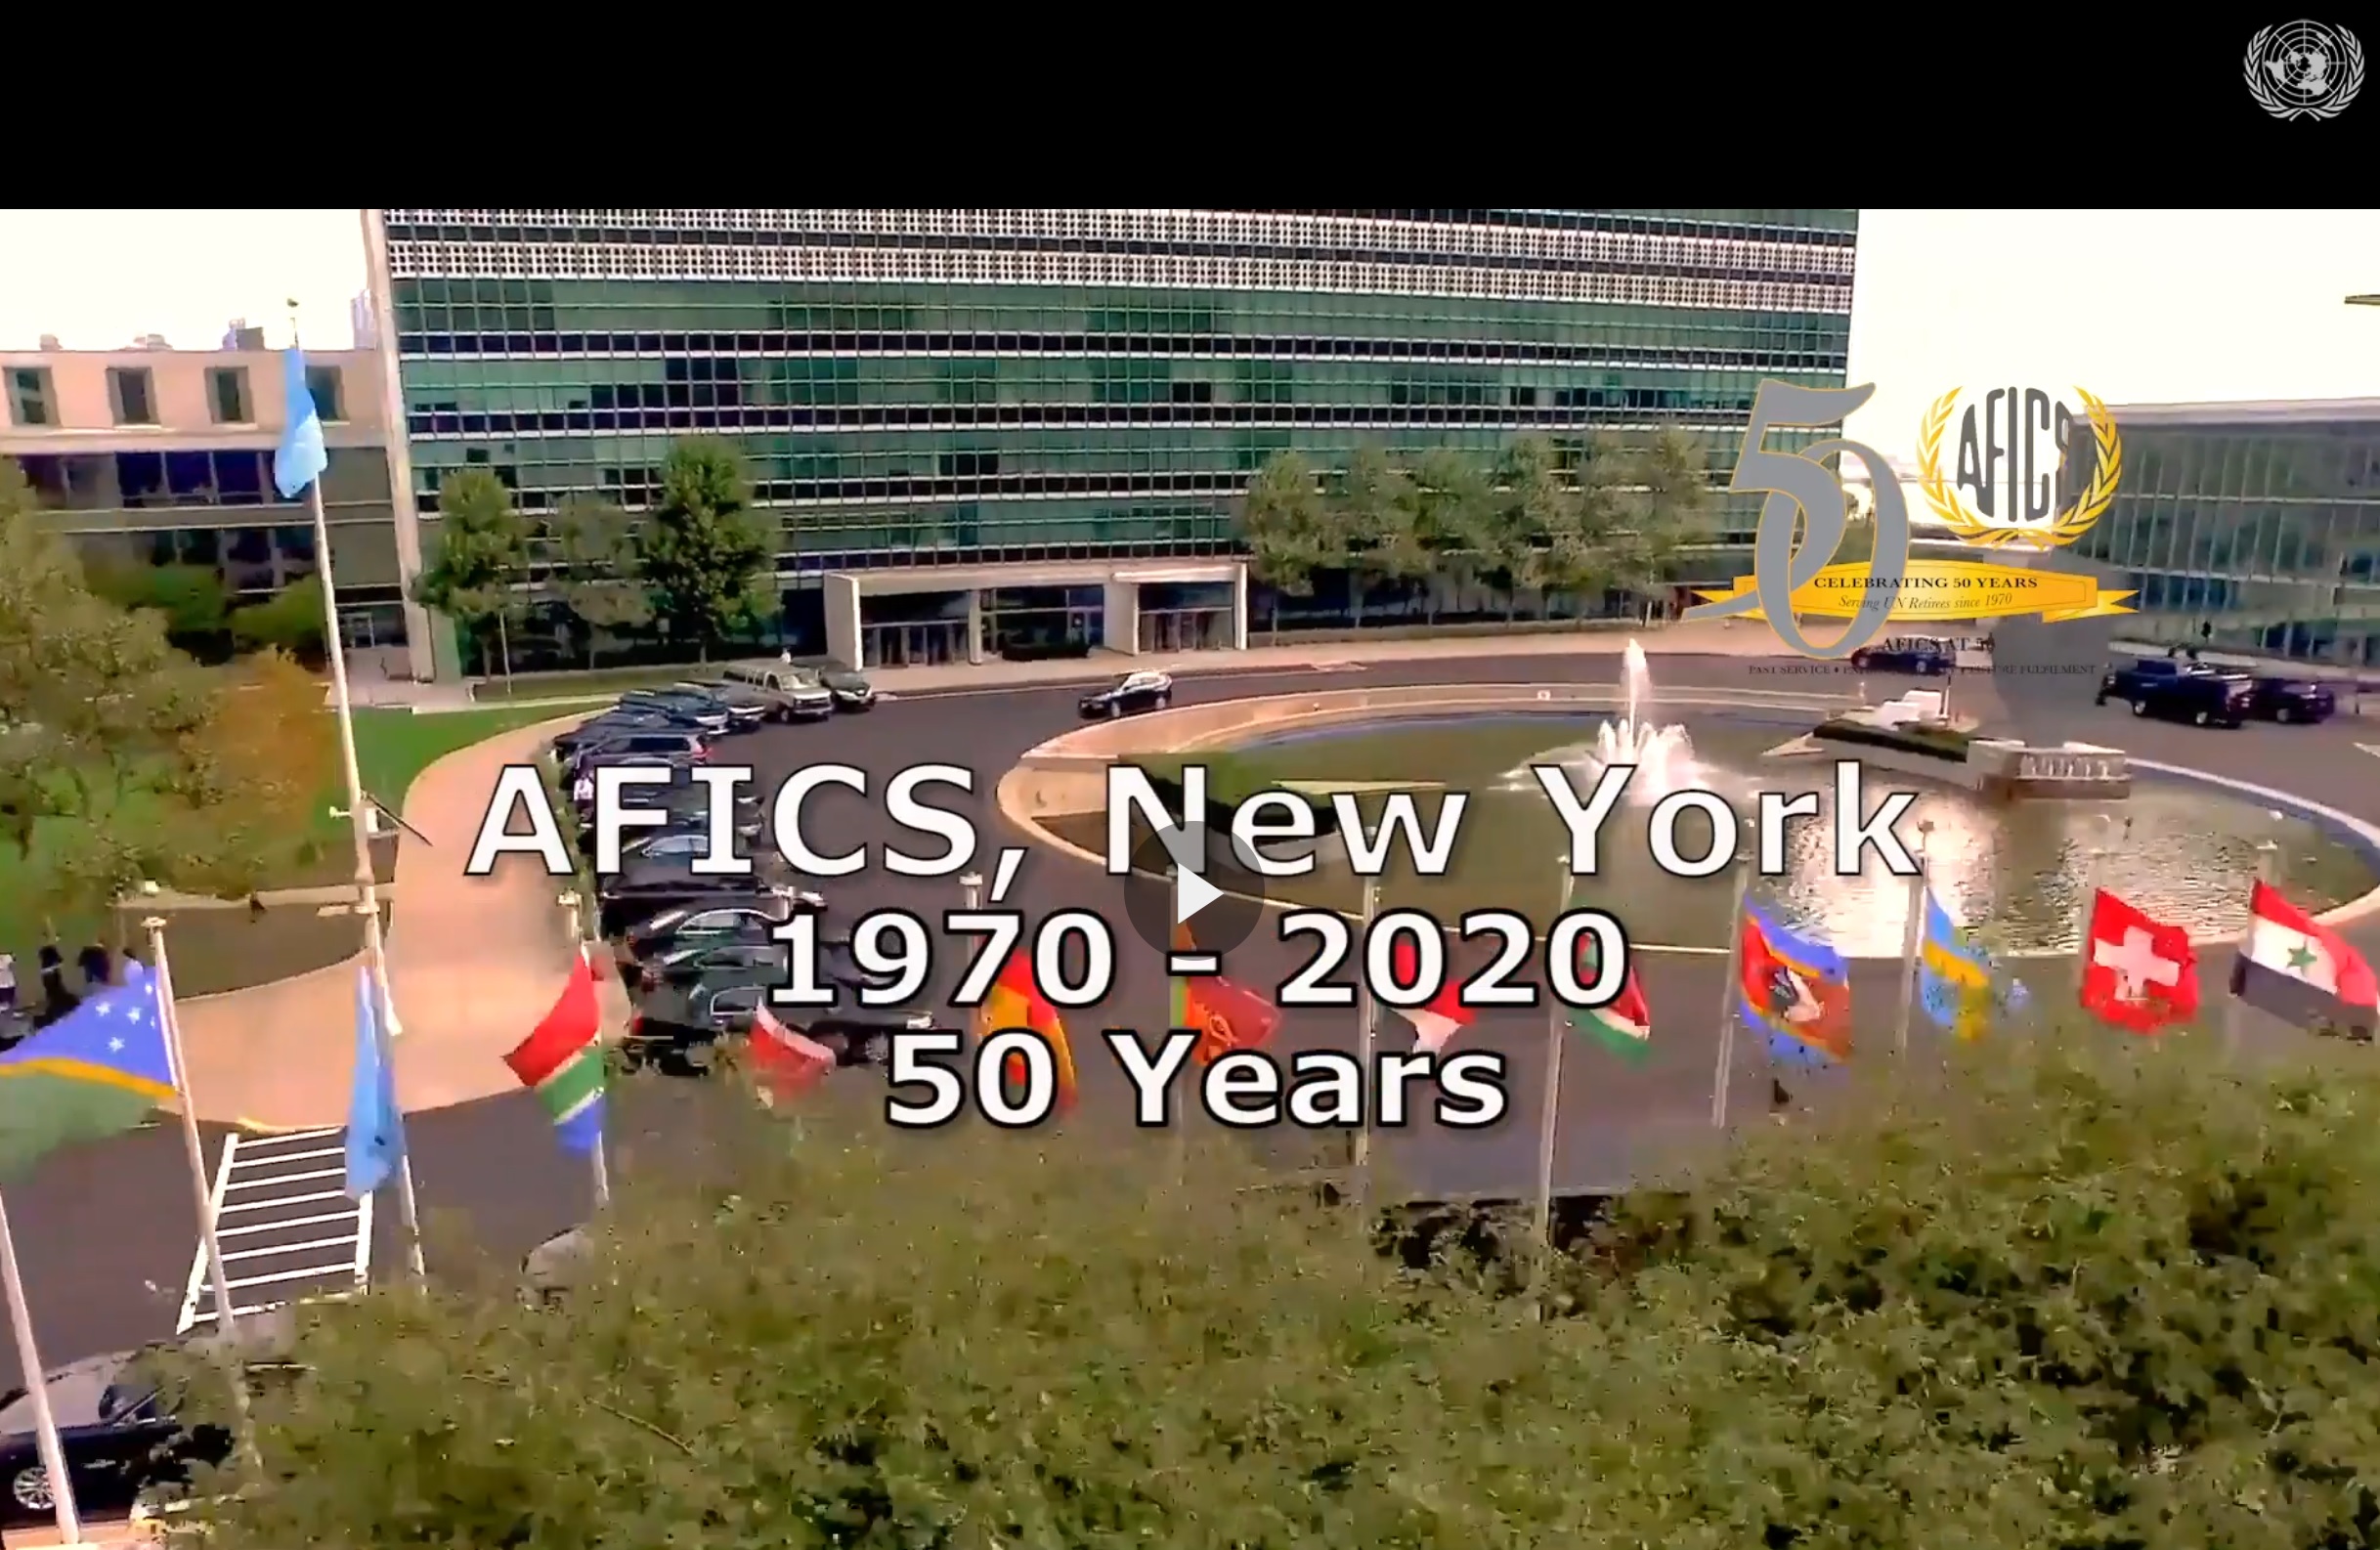 AFICS/NY's 50 Years of service, partnership and community - 1970-2020 Video (25min)